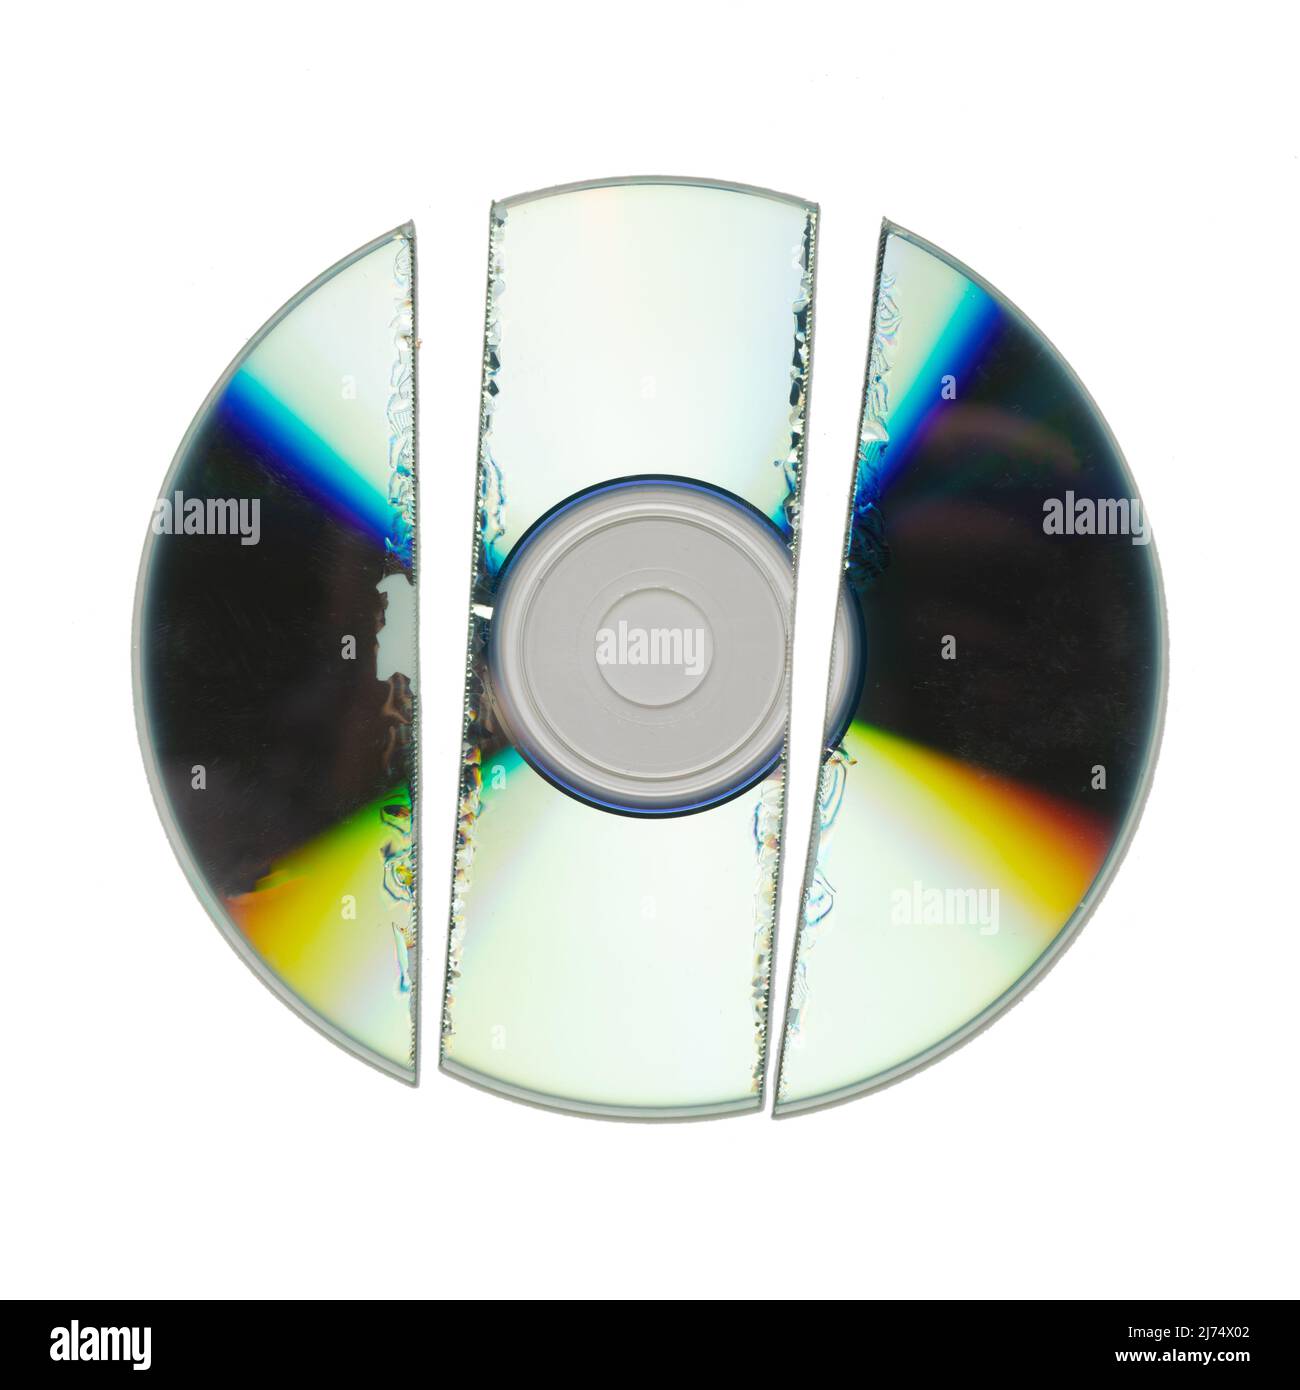 Isolated shredded broken CD against a white background Stock Photo